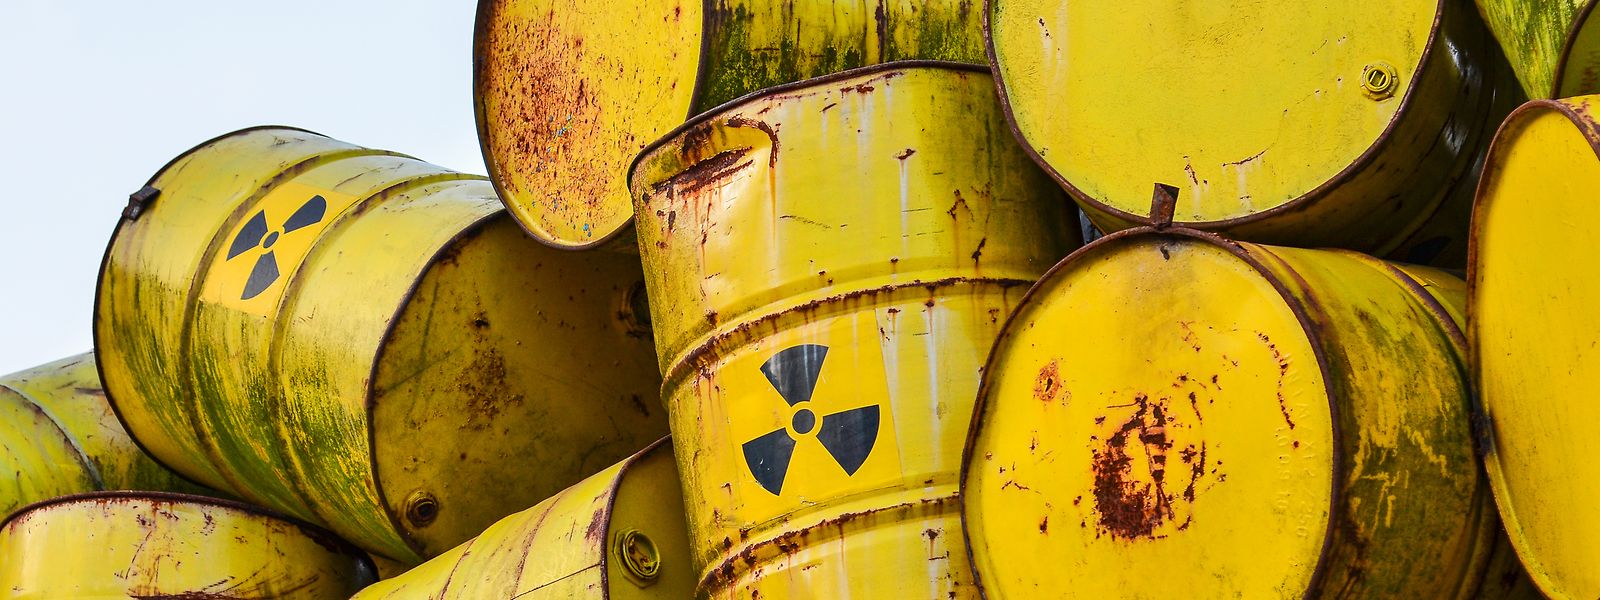 Die Lagerung von radioaktiven Abfällen sorgt nicht nur in Russland für hitzige Debatten. 